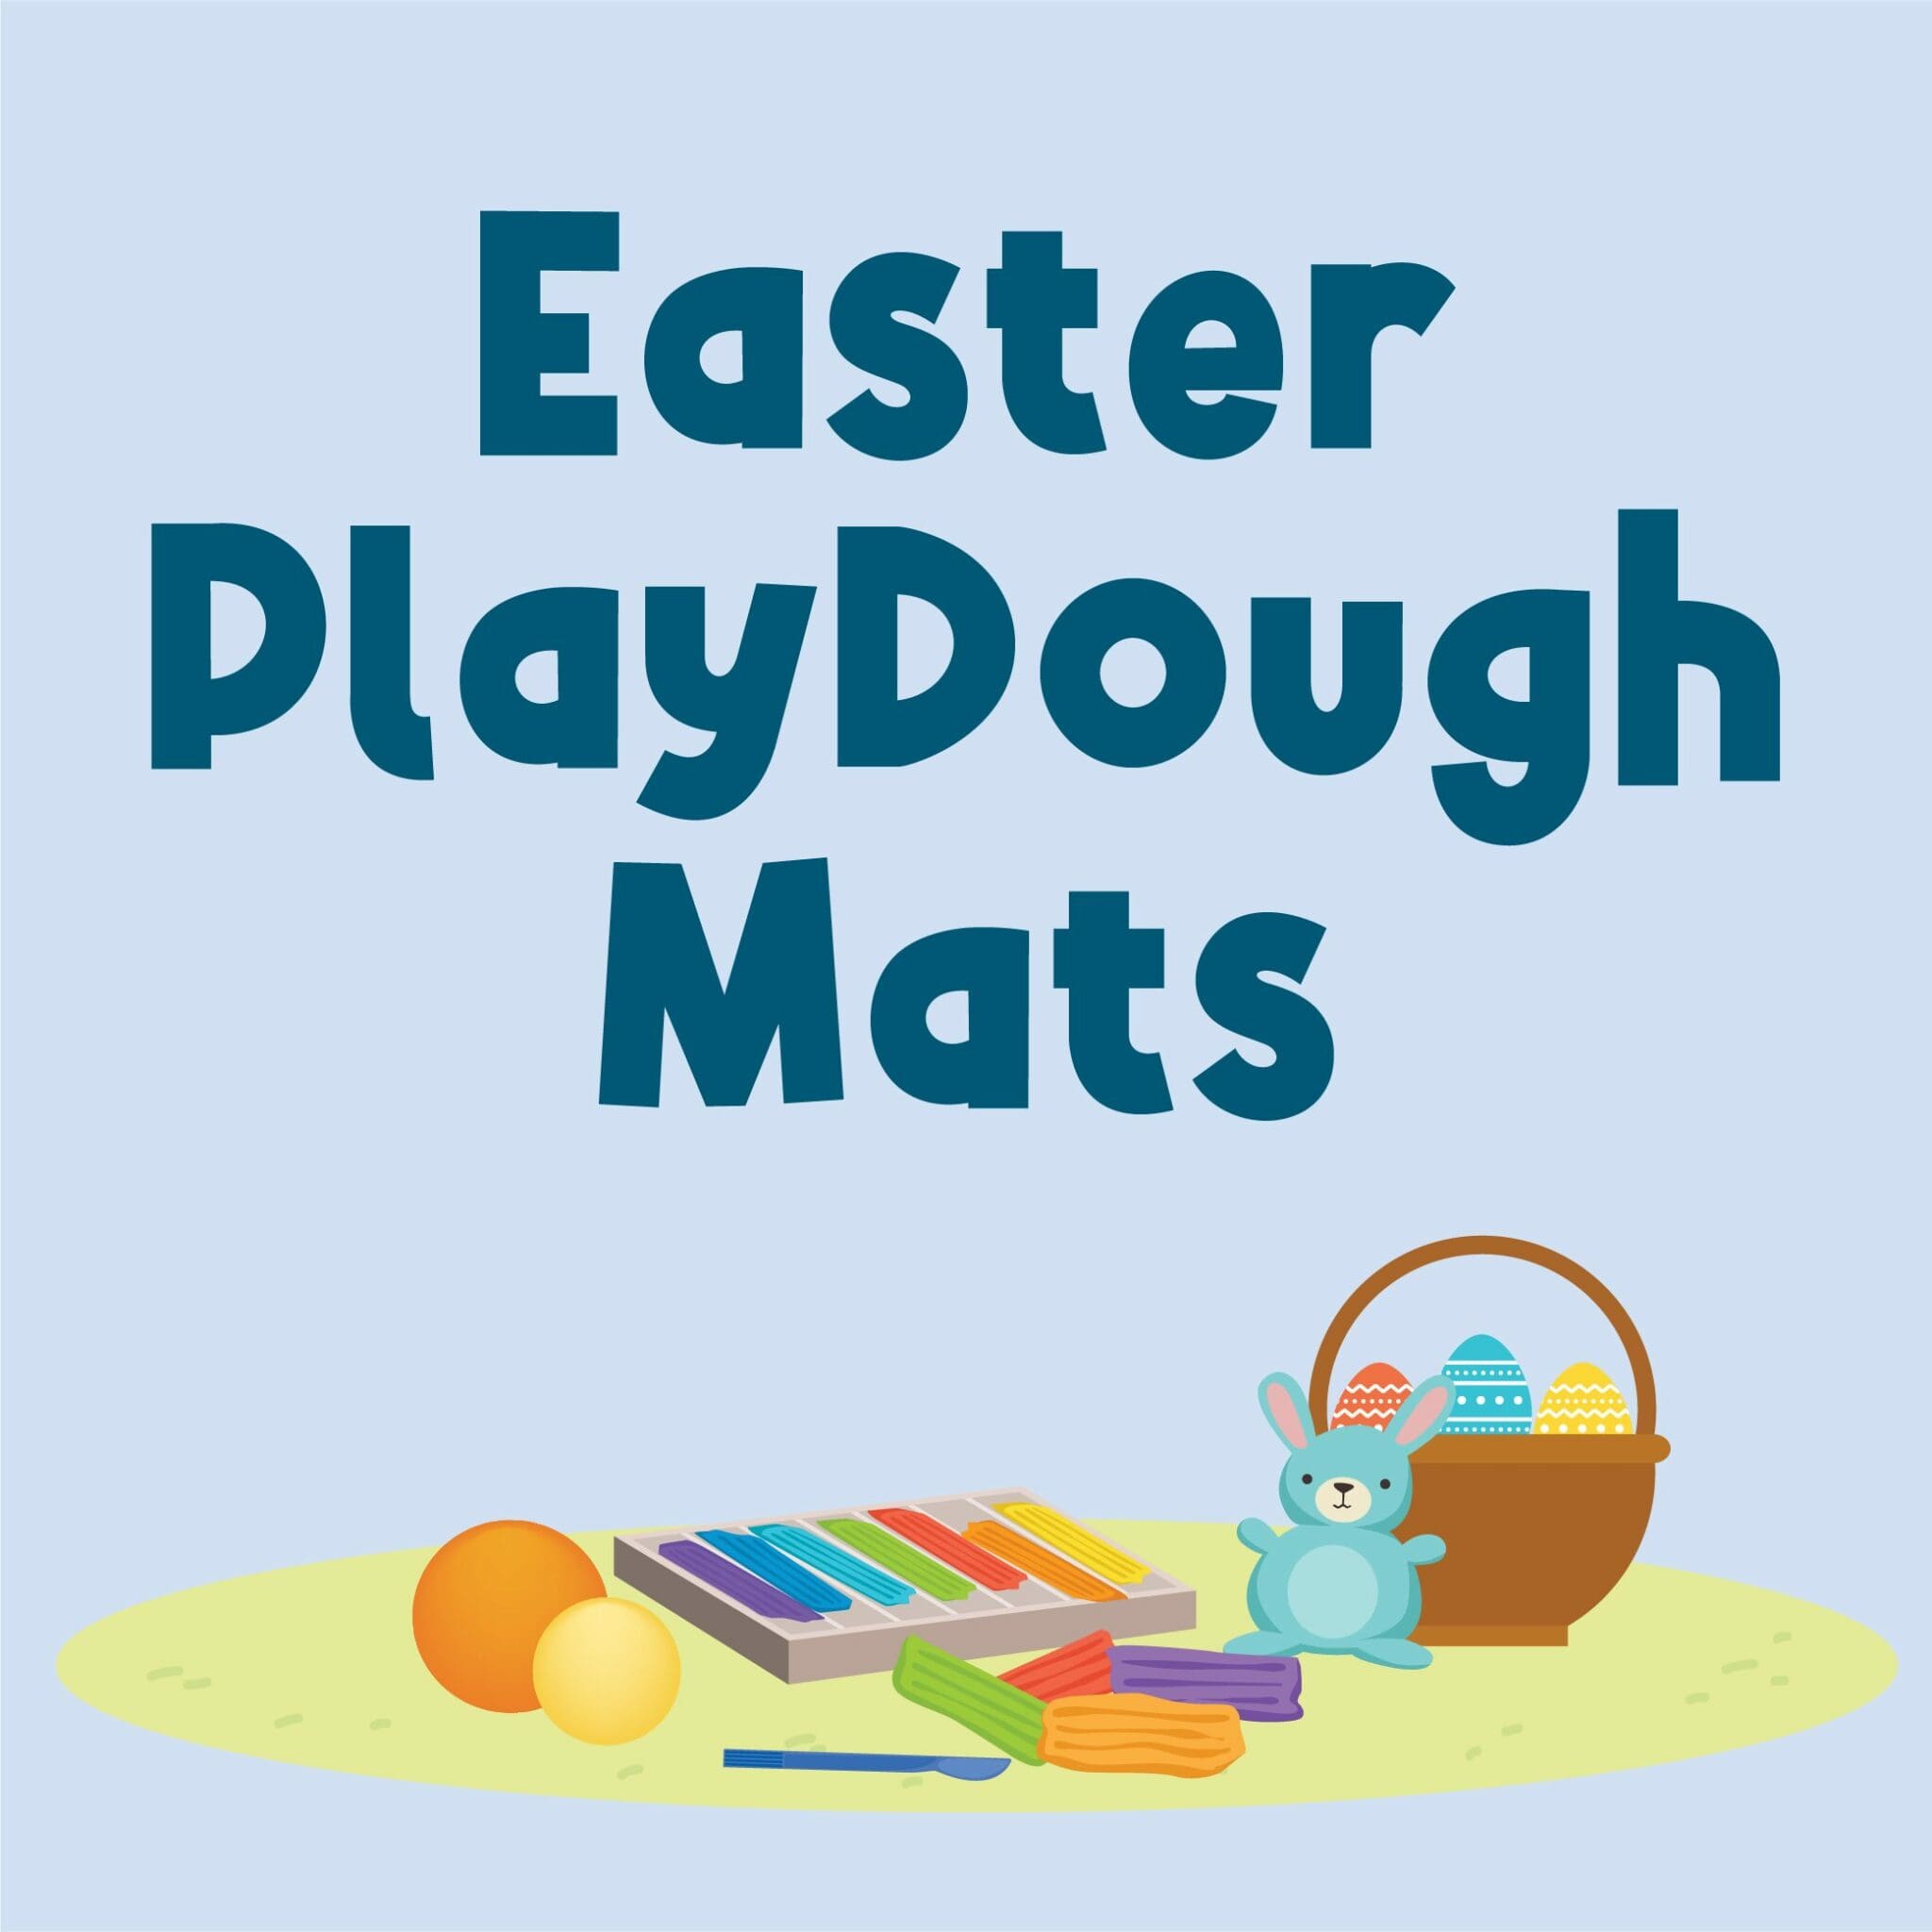 Easter PlayDough Mats